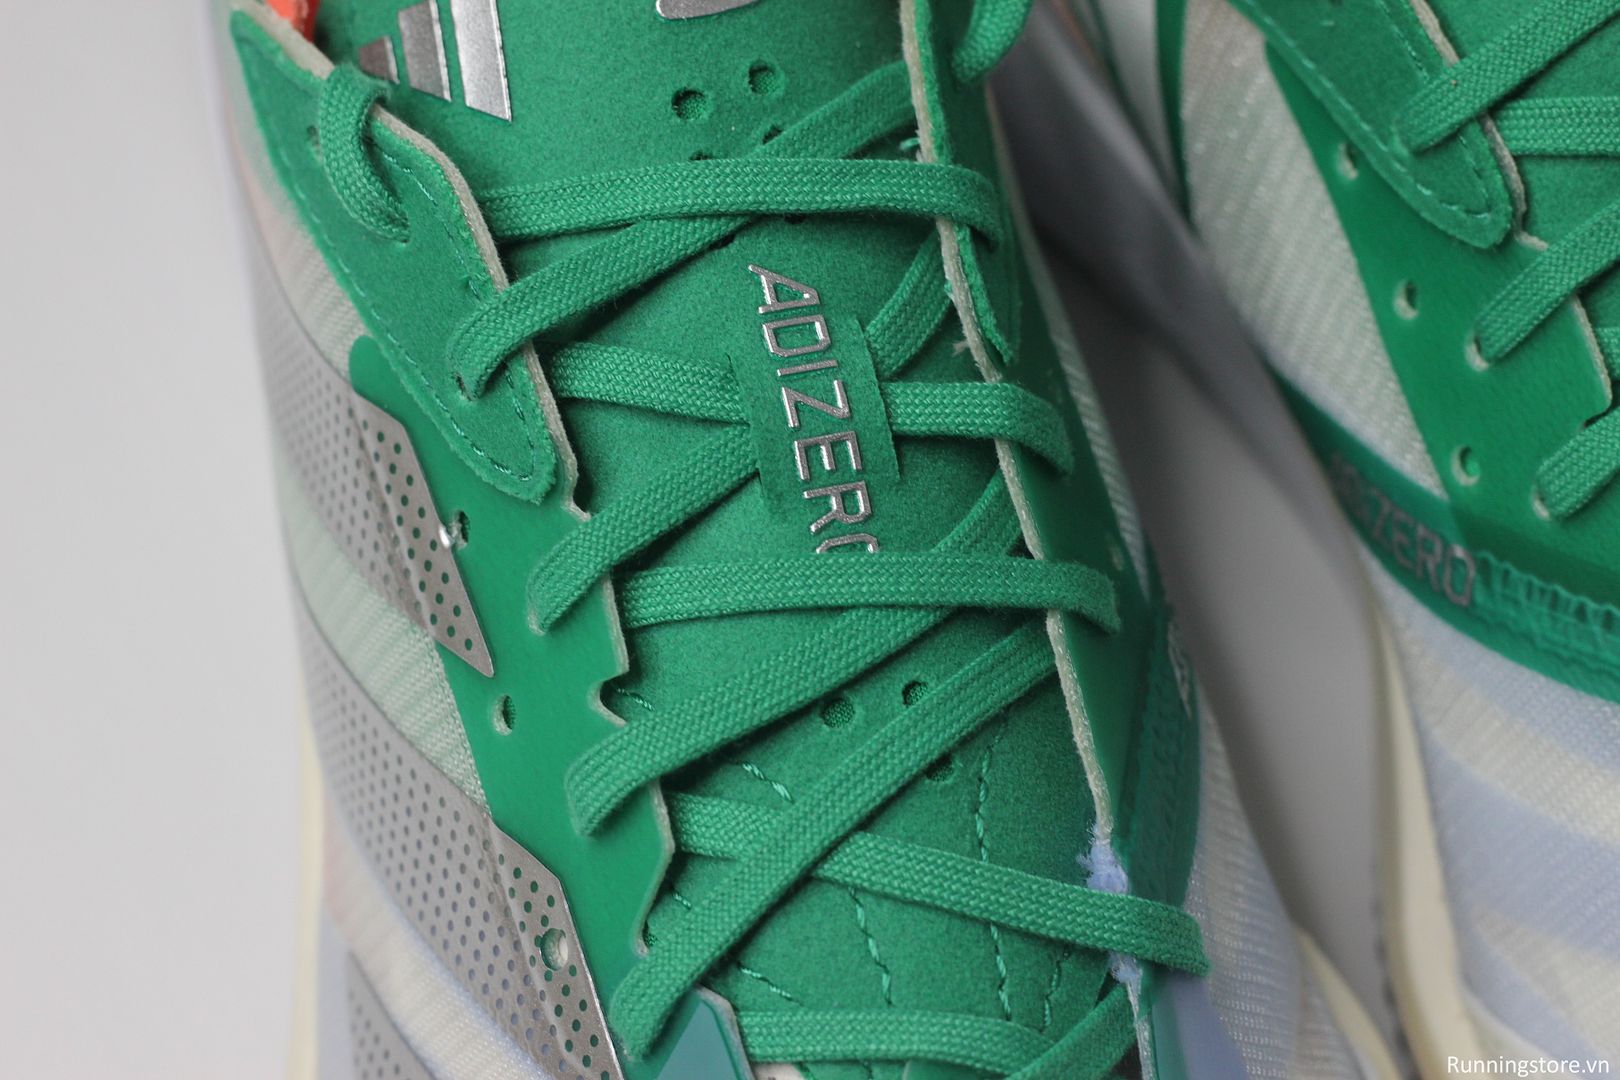 Giày chạy bộ Adidas Adios 7 màu trắng xanh lá HQ3699